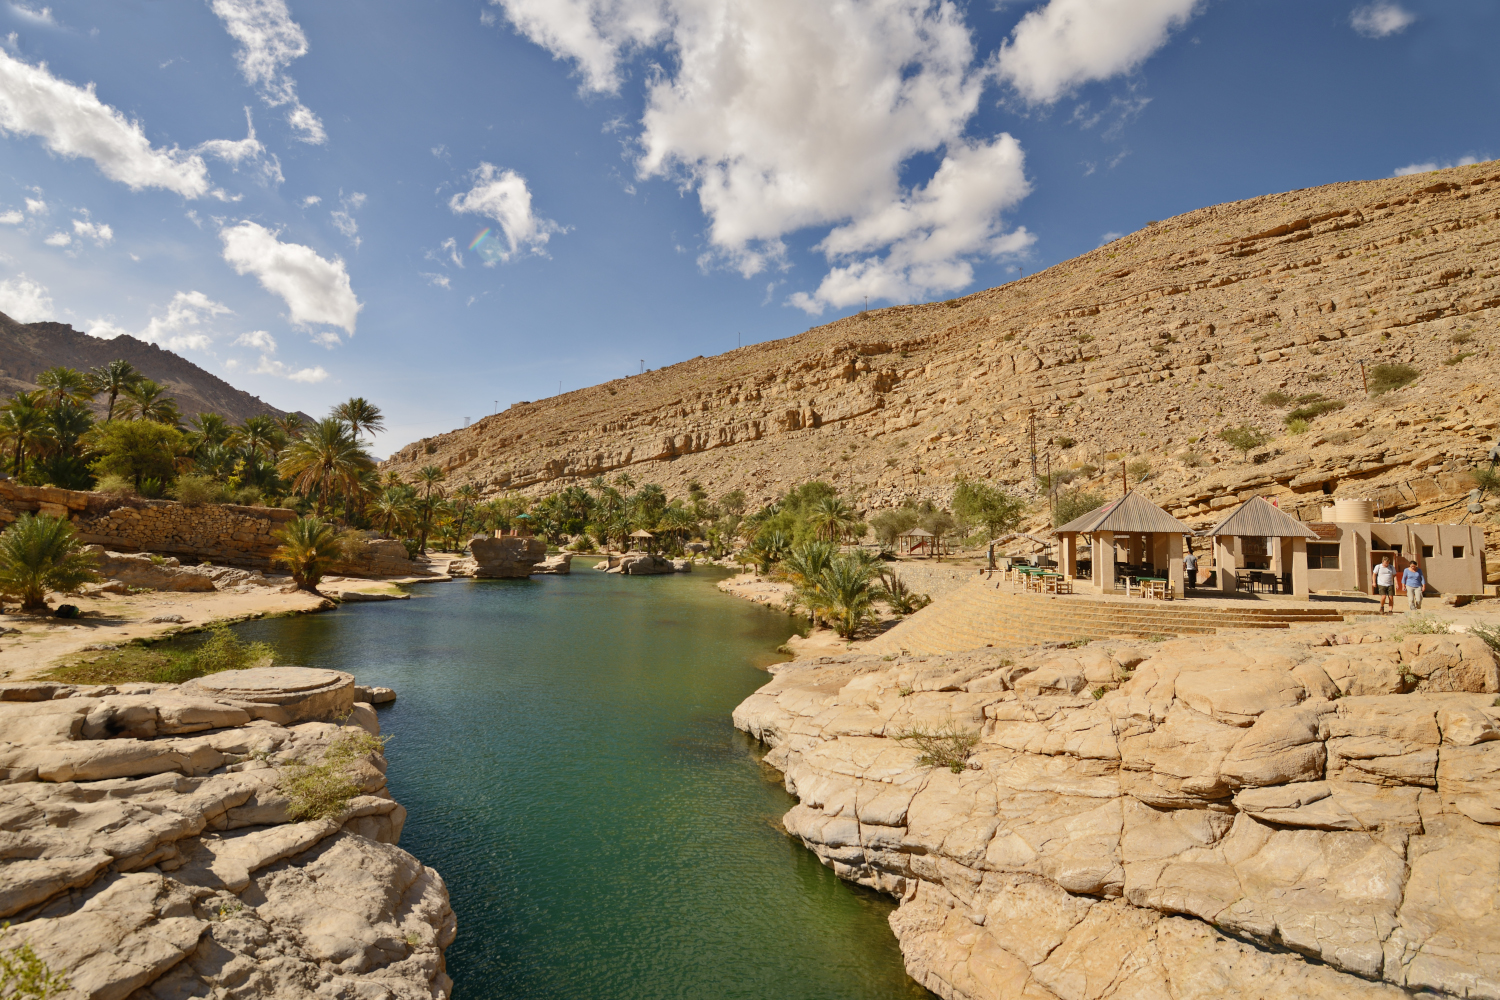 Tourists enjoy the beautiful Wadi Bani Khalid